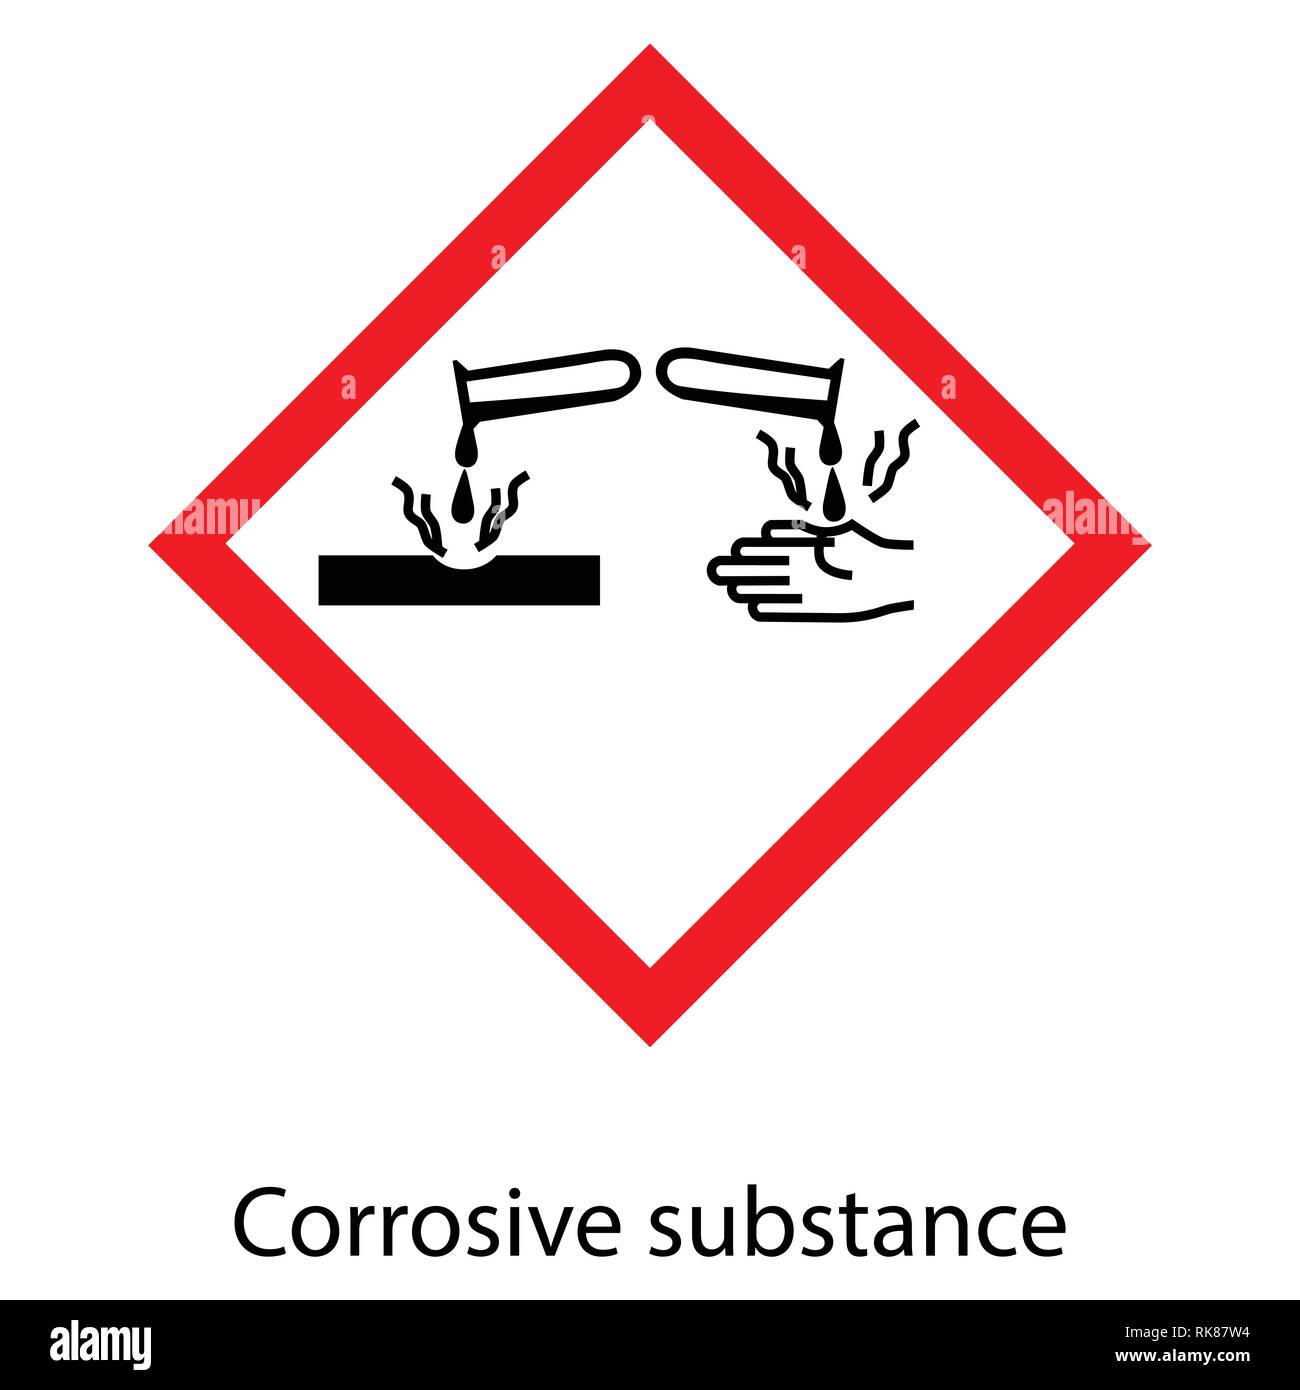 Vector illustration GHS05 pictogramme de danger - corrosif ...